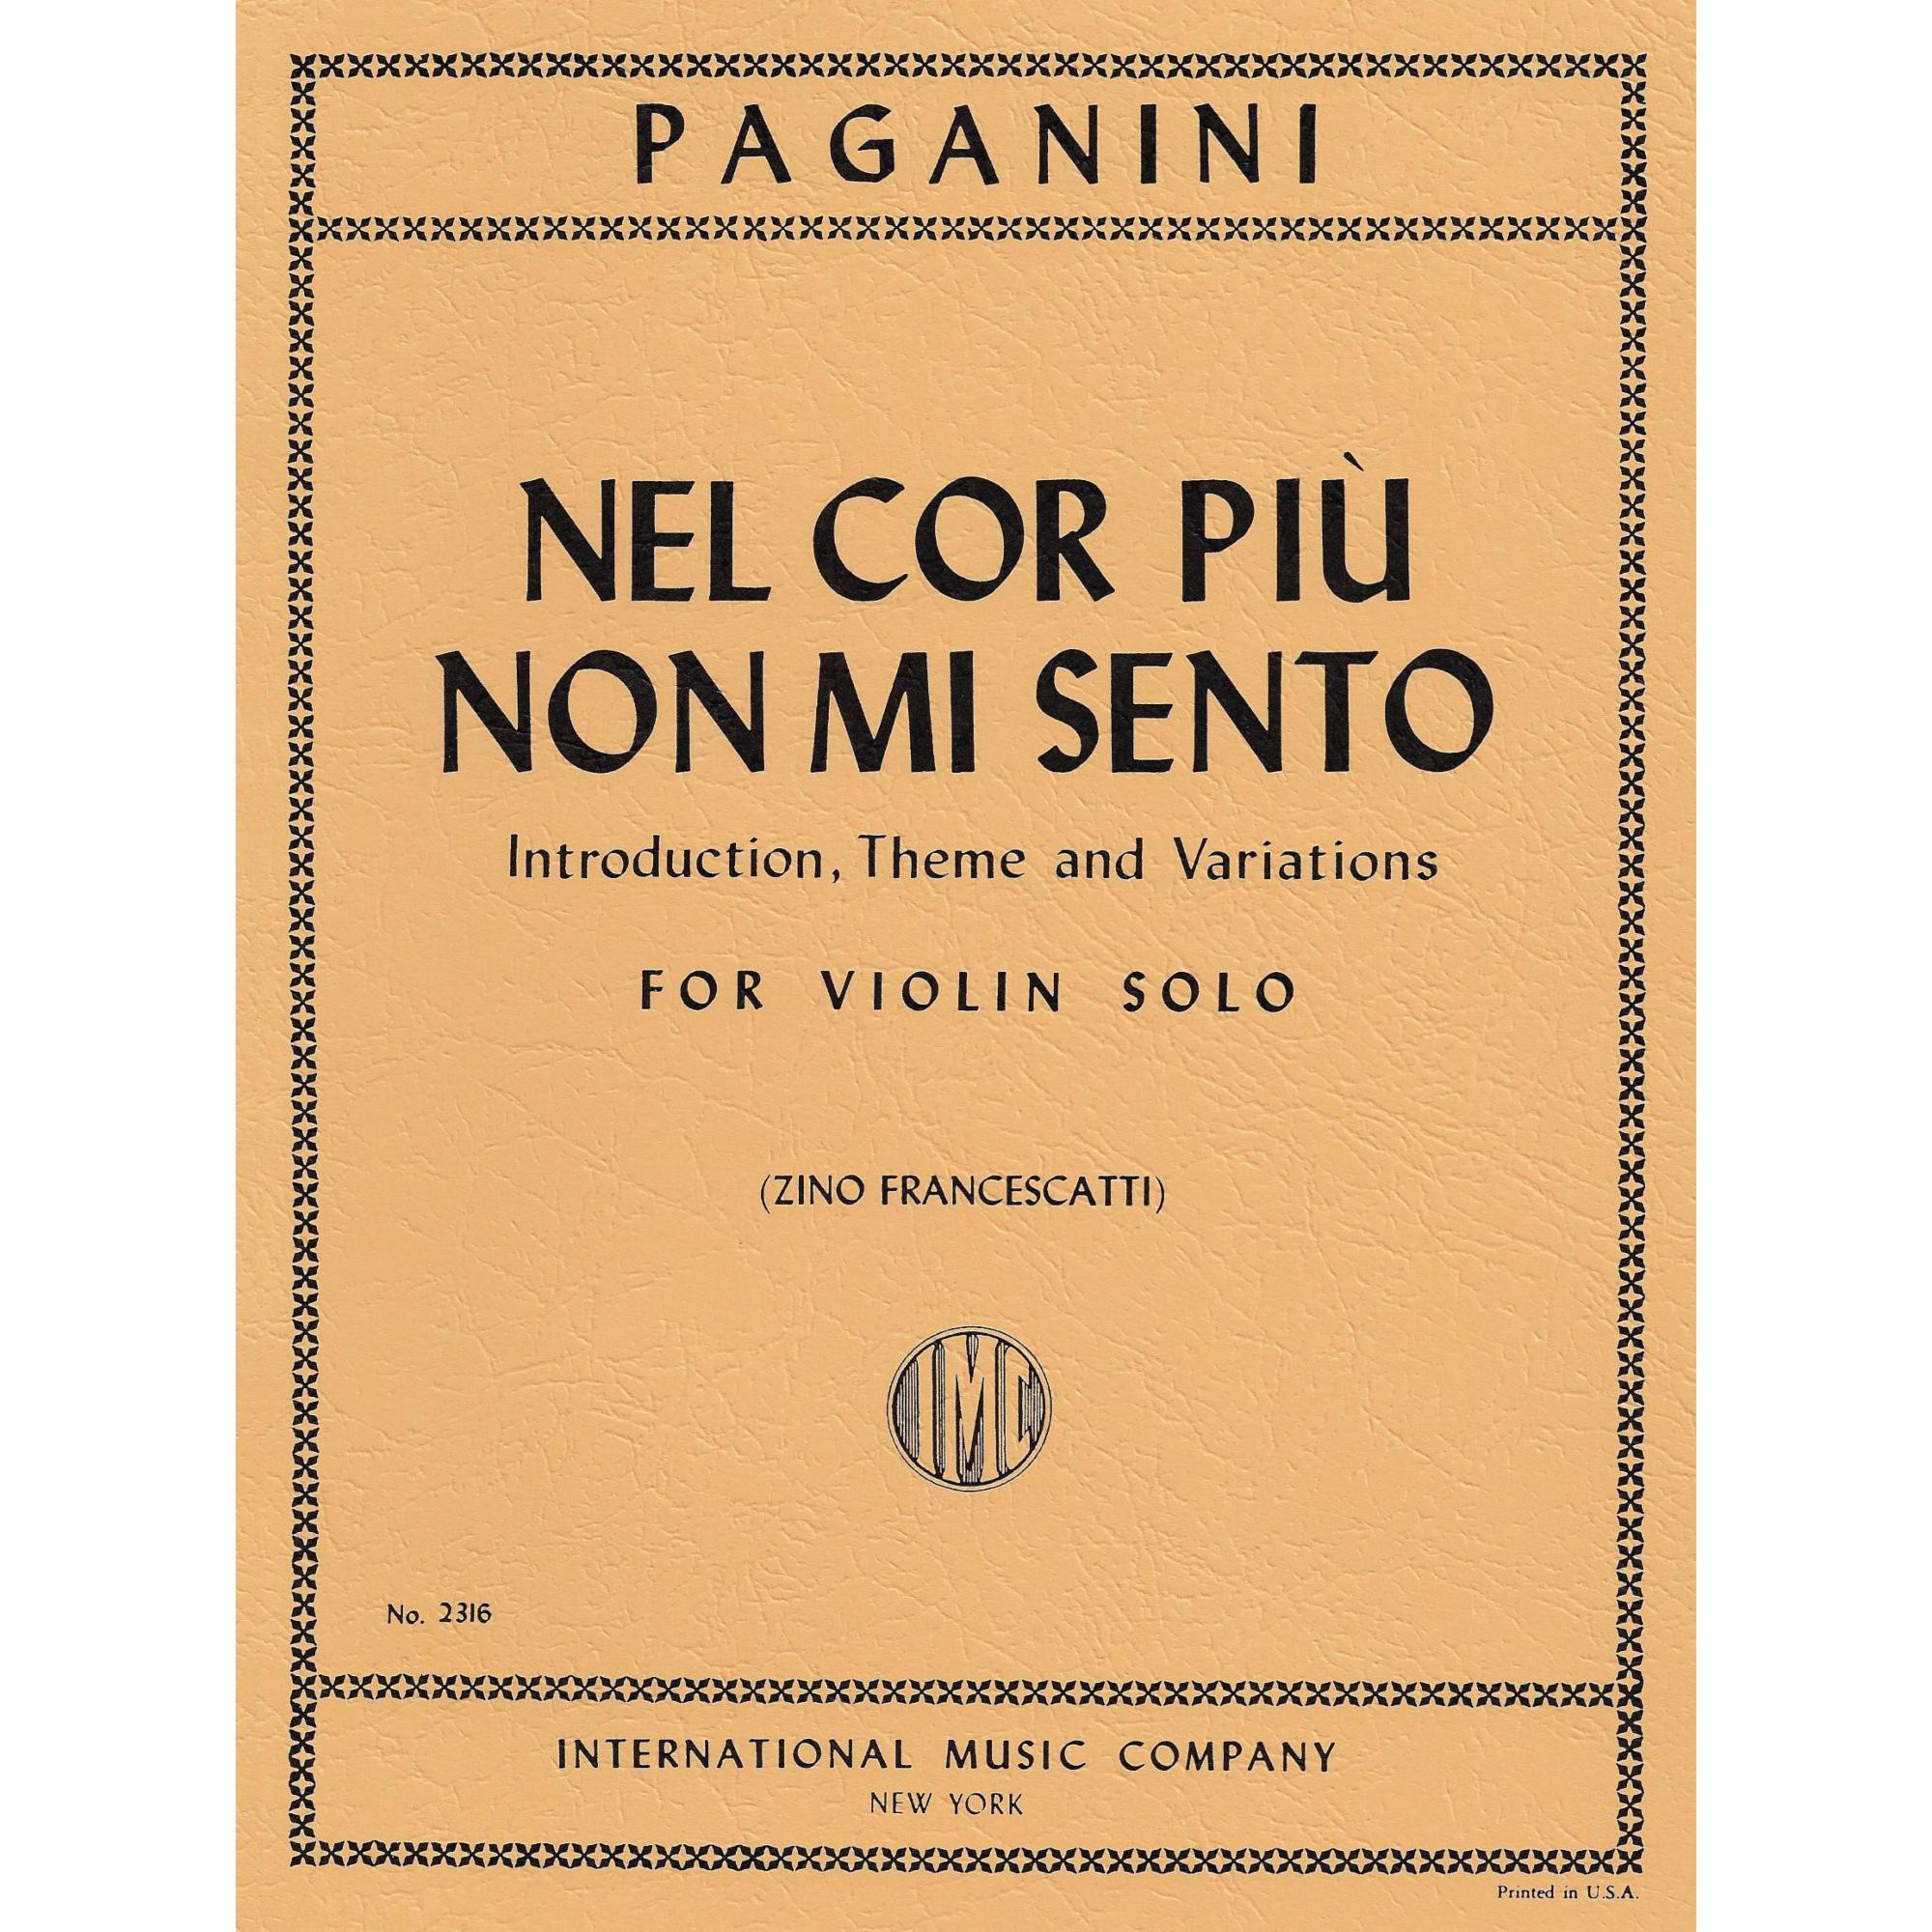 Paganini -- Nel cor piu non mi sento (Introduction, Theme and Variations) for Solo Violin